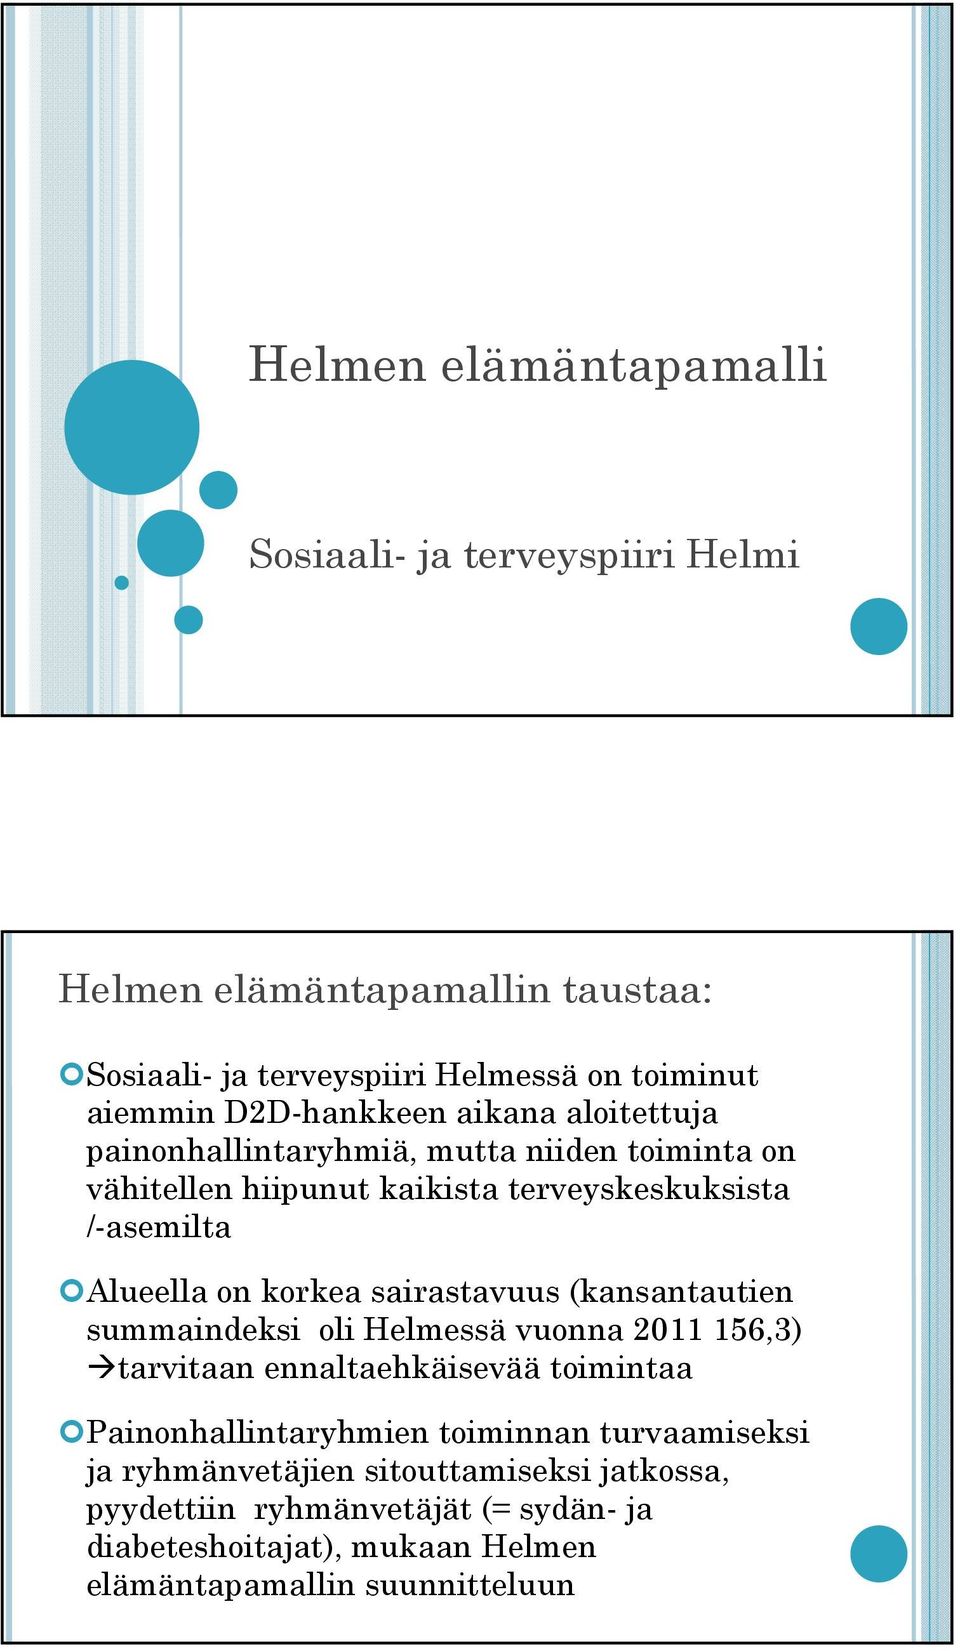 korkea sairastavuus (kansantautien summaindeksi oli Helmessä vuonna 2011 156,3) tarvitaan ennaltaehkäisevää toimintaa Painonhallintaryhmien toiminnan